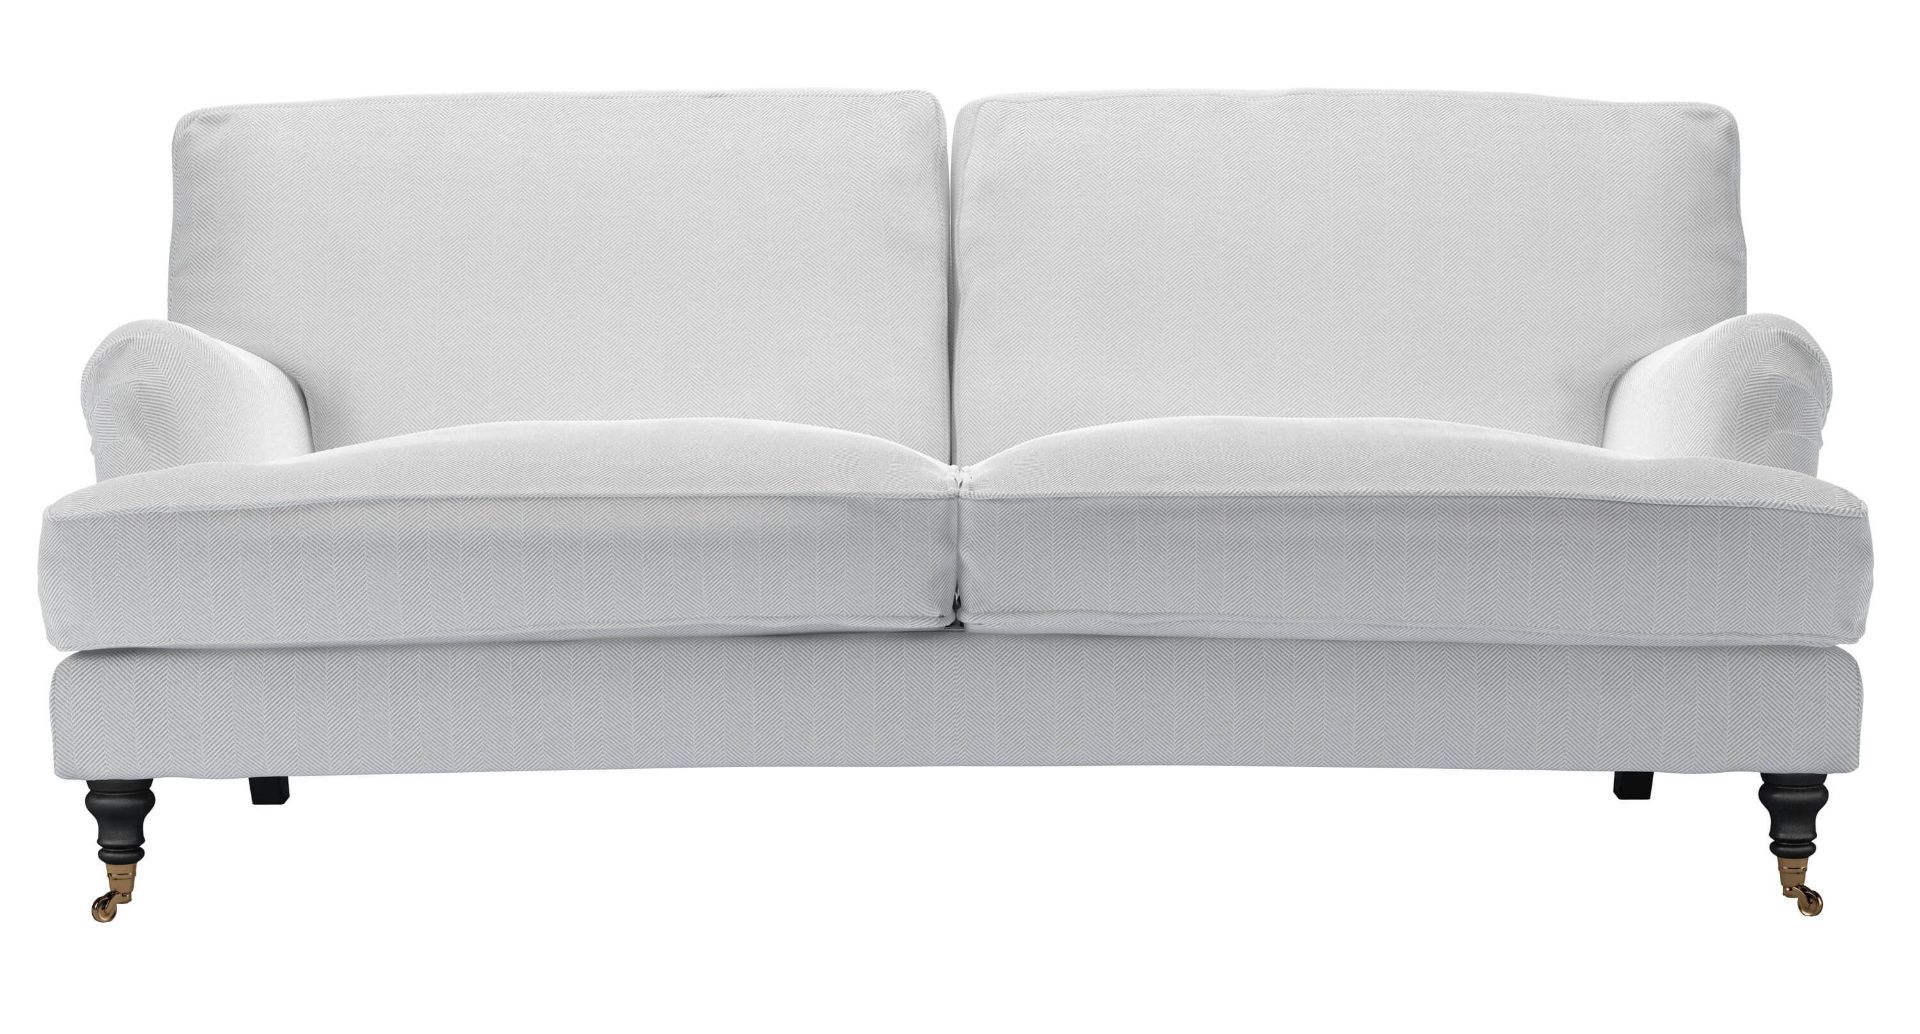 Bluebell 3 Seat Sofa In Pumice House Herringbone Weave RRP - £2110